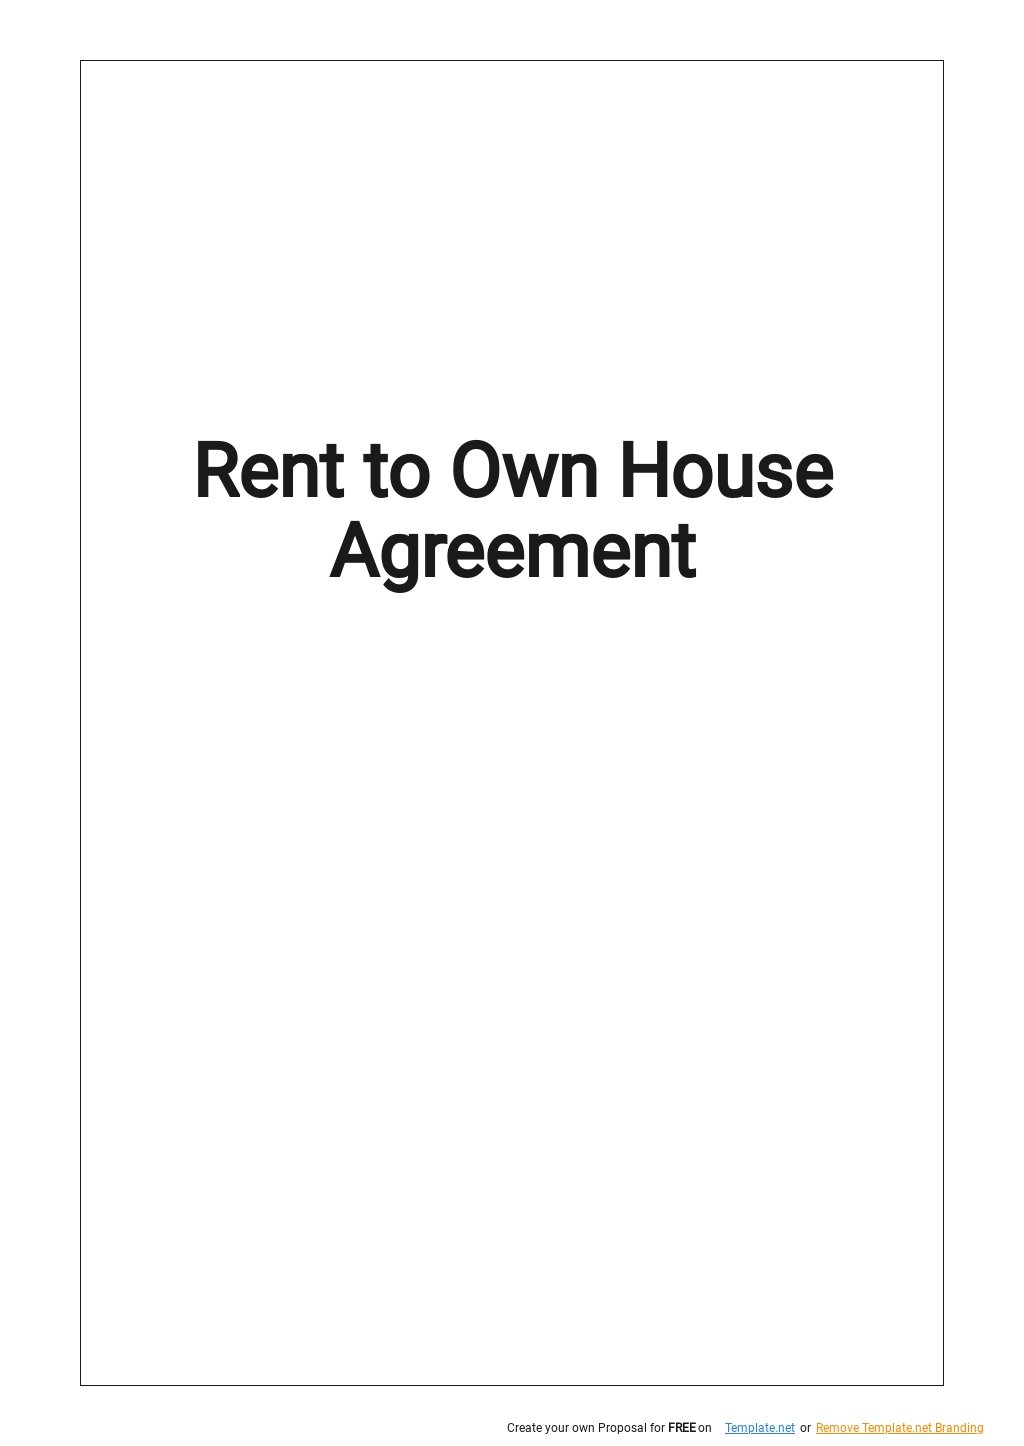 purchase-agreement-addendum